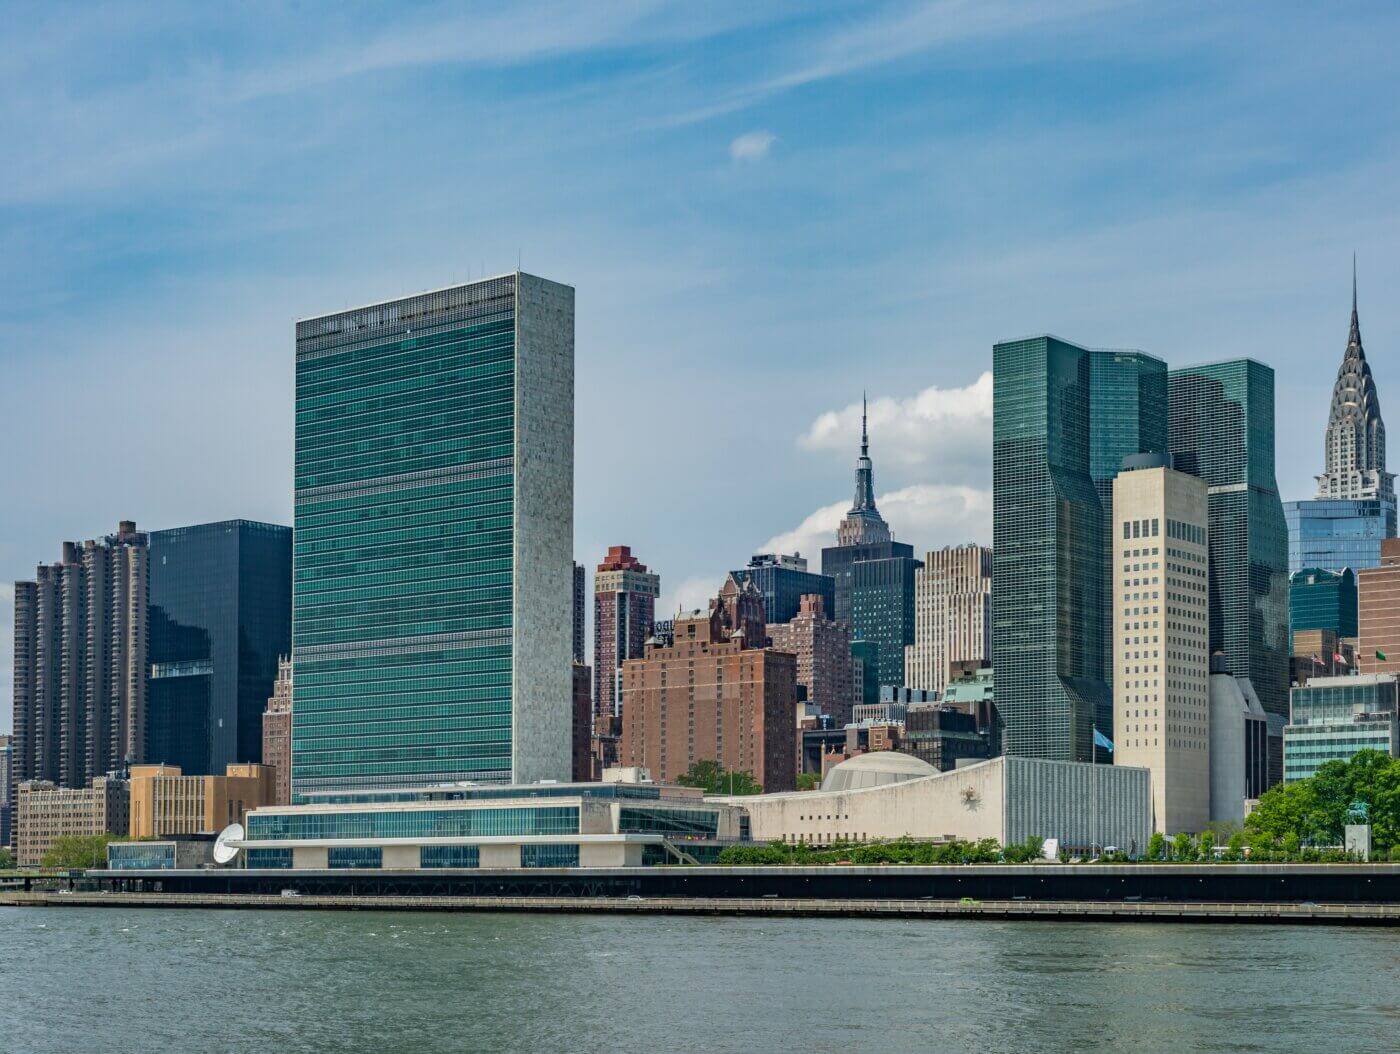 Auf dem Bild sieht man die Skyline von New York vom Wasser aus mit blauem Himmel im Hintergrund. Im Vordergrund steht das hohe und eckige Gebäude der Vereinten Nationen UN.